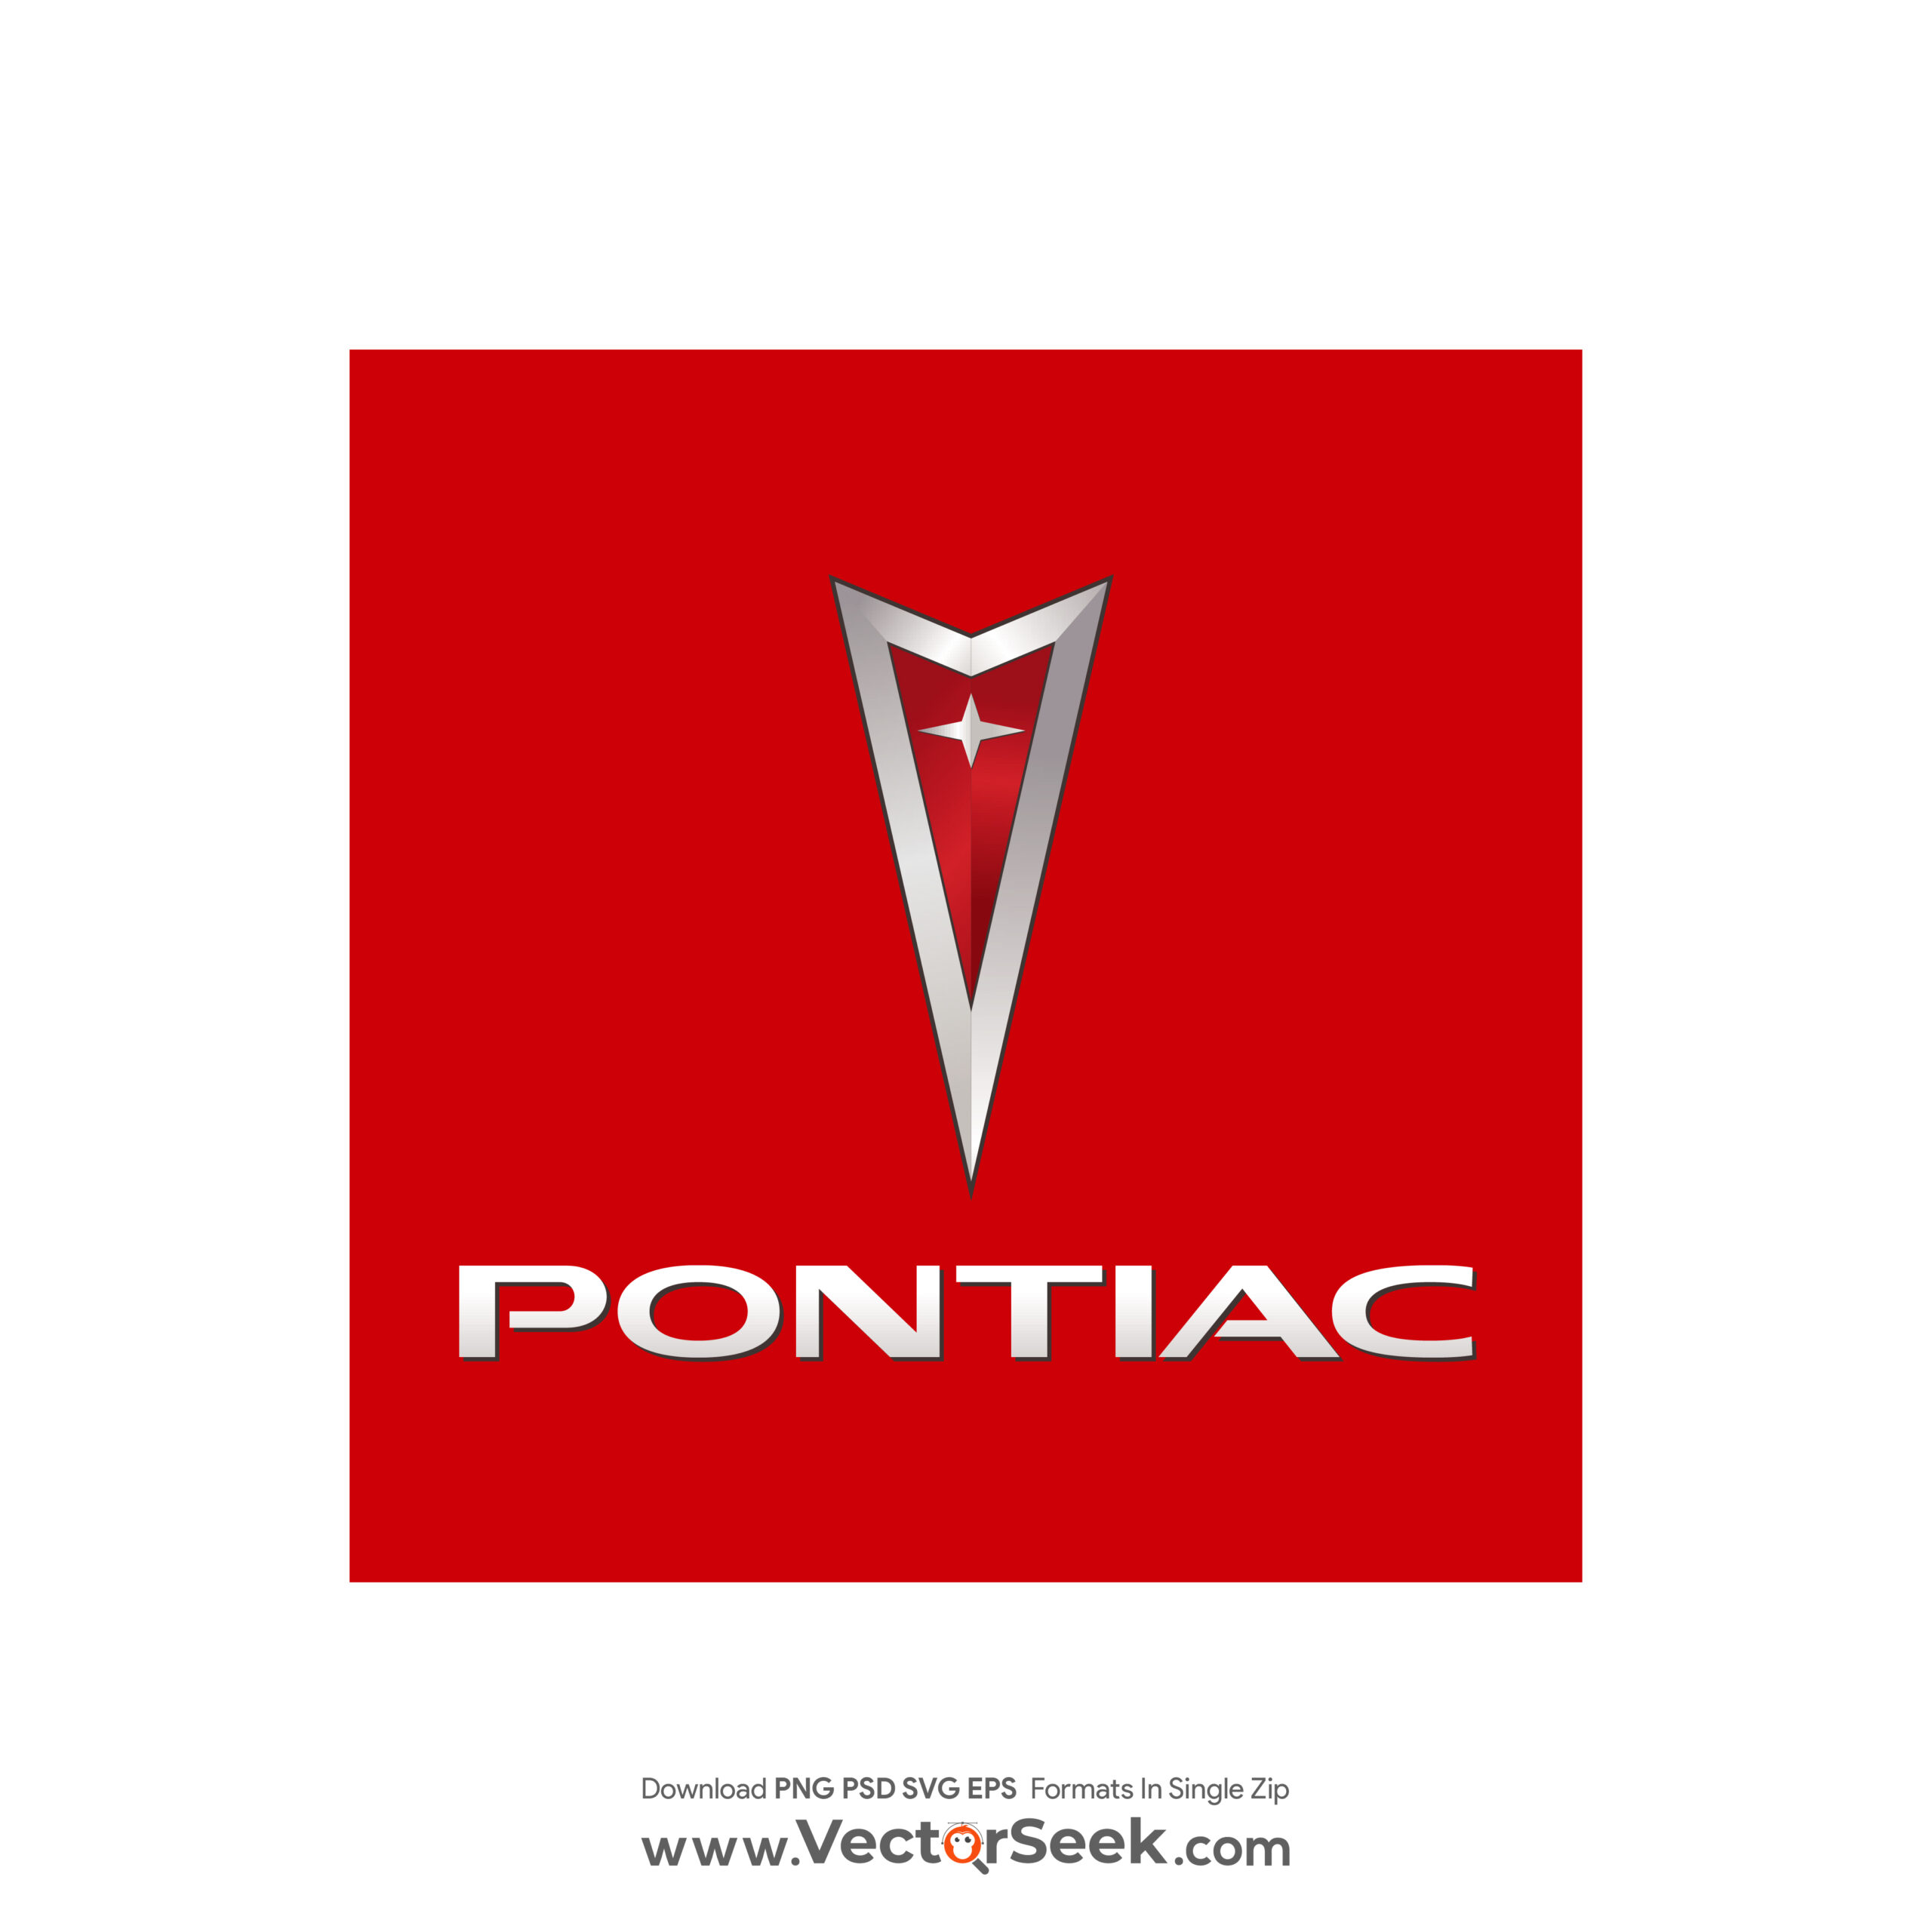 Pontiac Car Show - Automobile Driving Museum